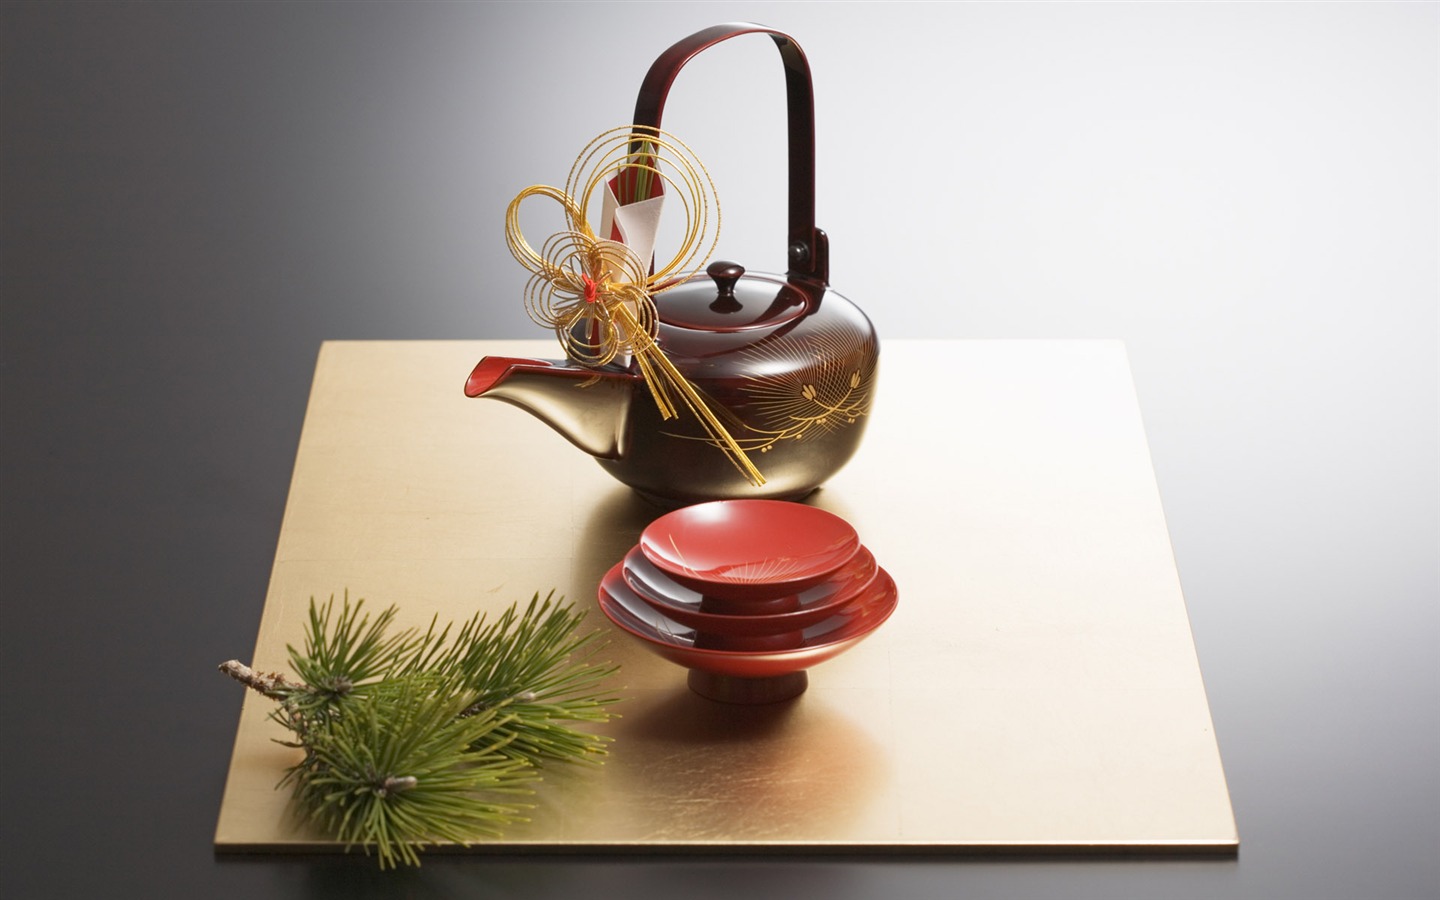 Fondos de año nuevo japonés Cultura (2) #6 - 1440x900